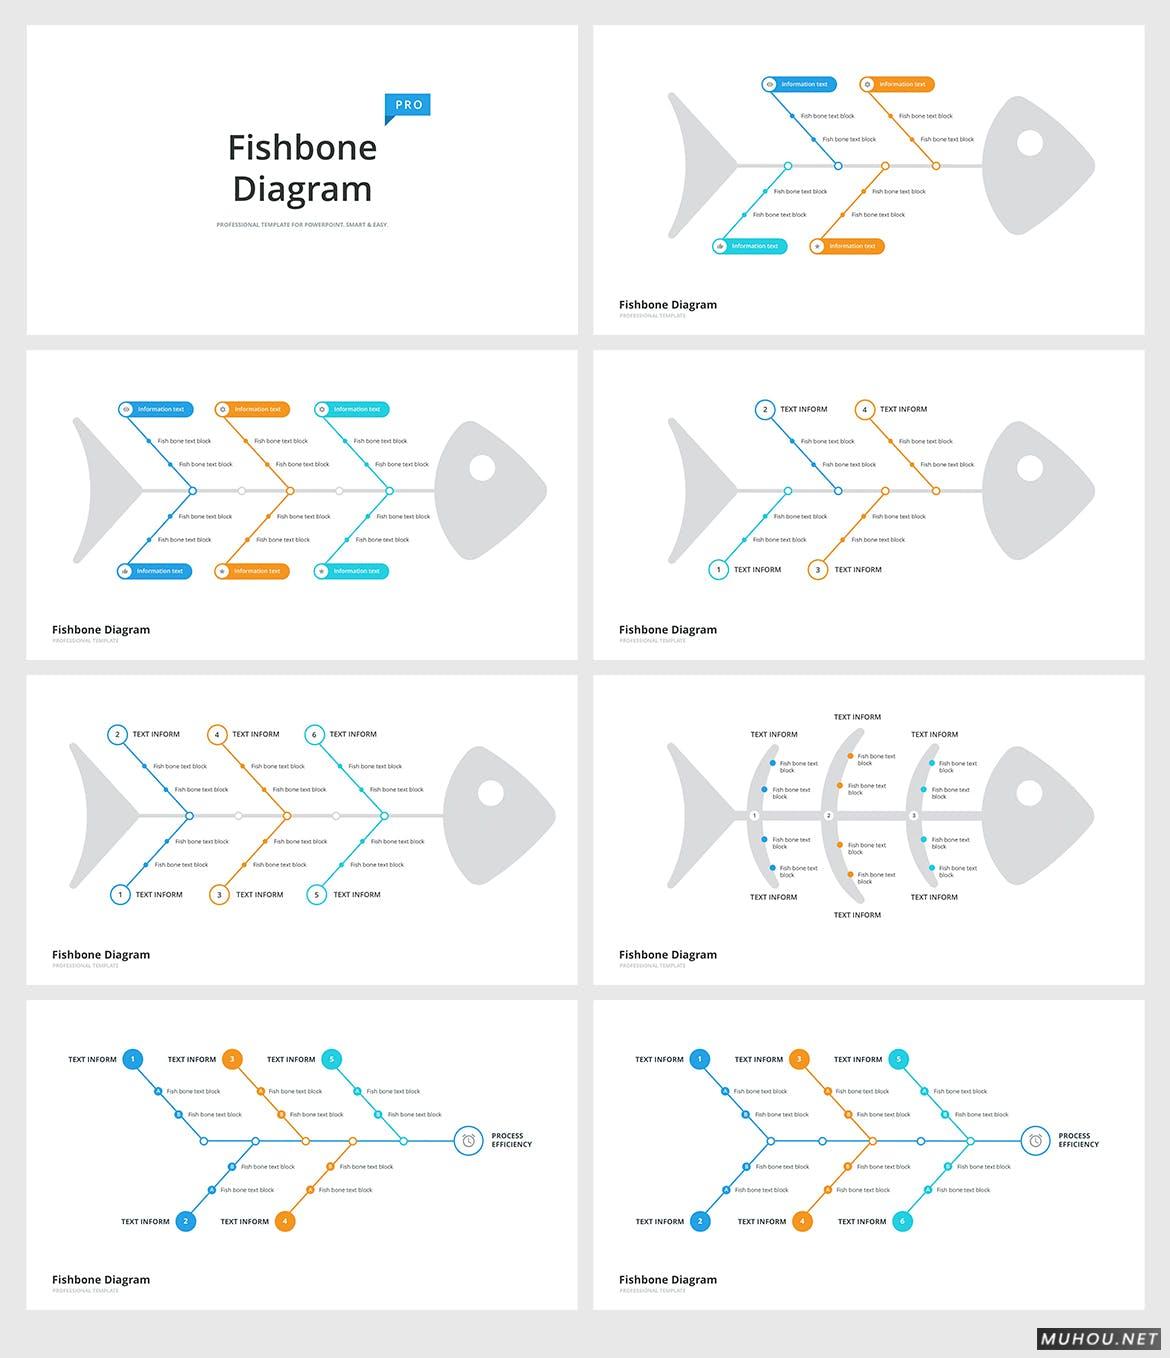 分析报告和计划表鱼骨石川型时间轴多用途流程图PowerPoint模板（PPTX, PDF）插图5